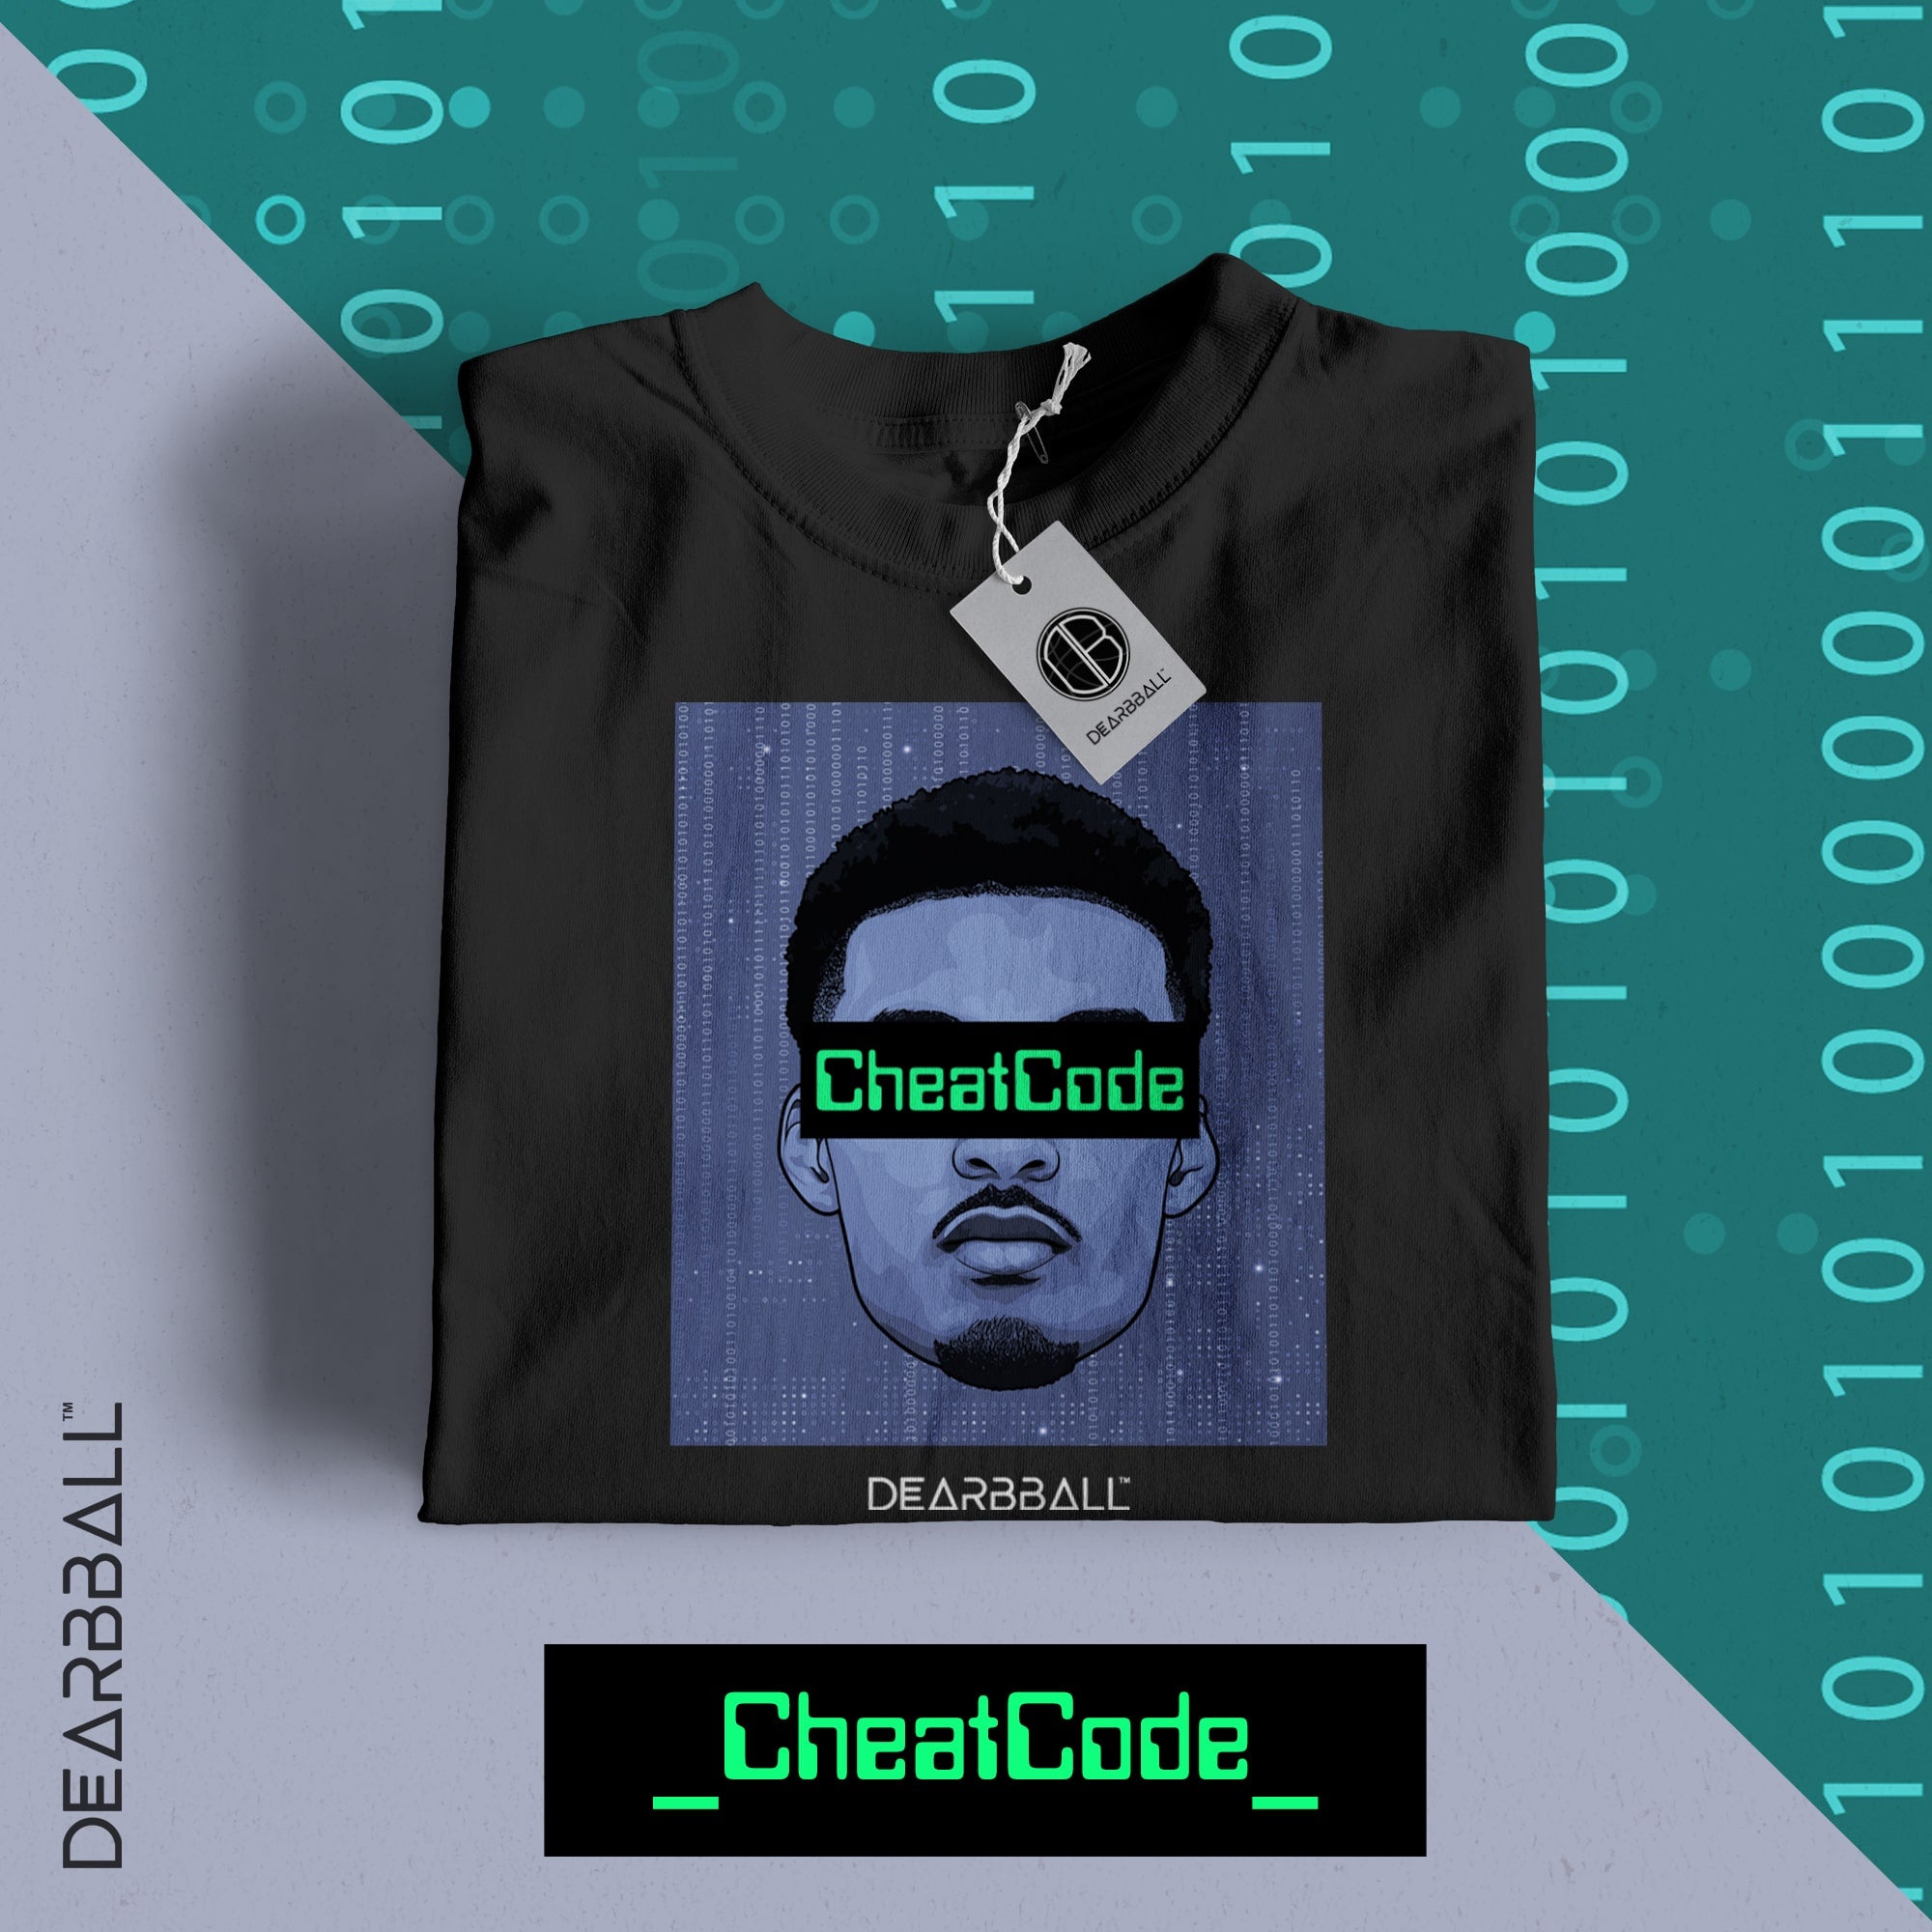 Camiseta DearBBall - CheatCode Edición limitada